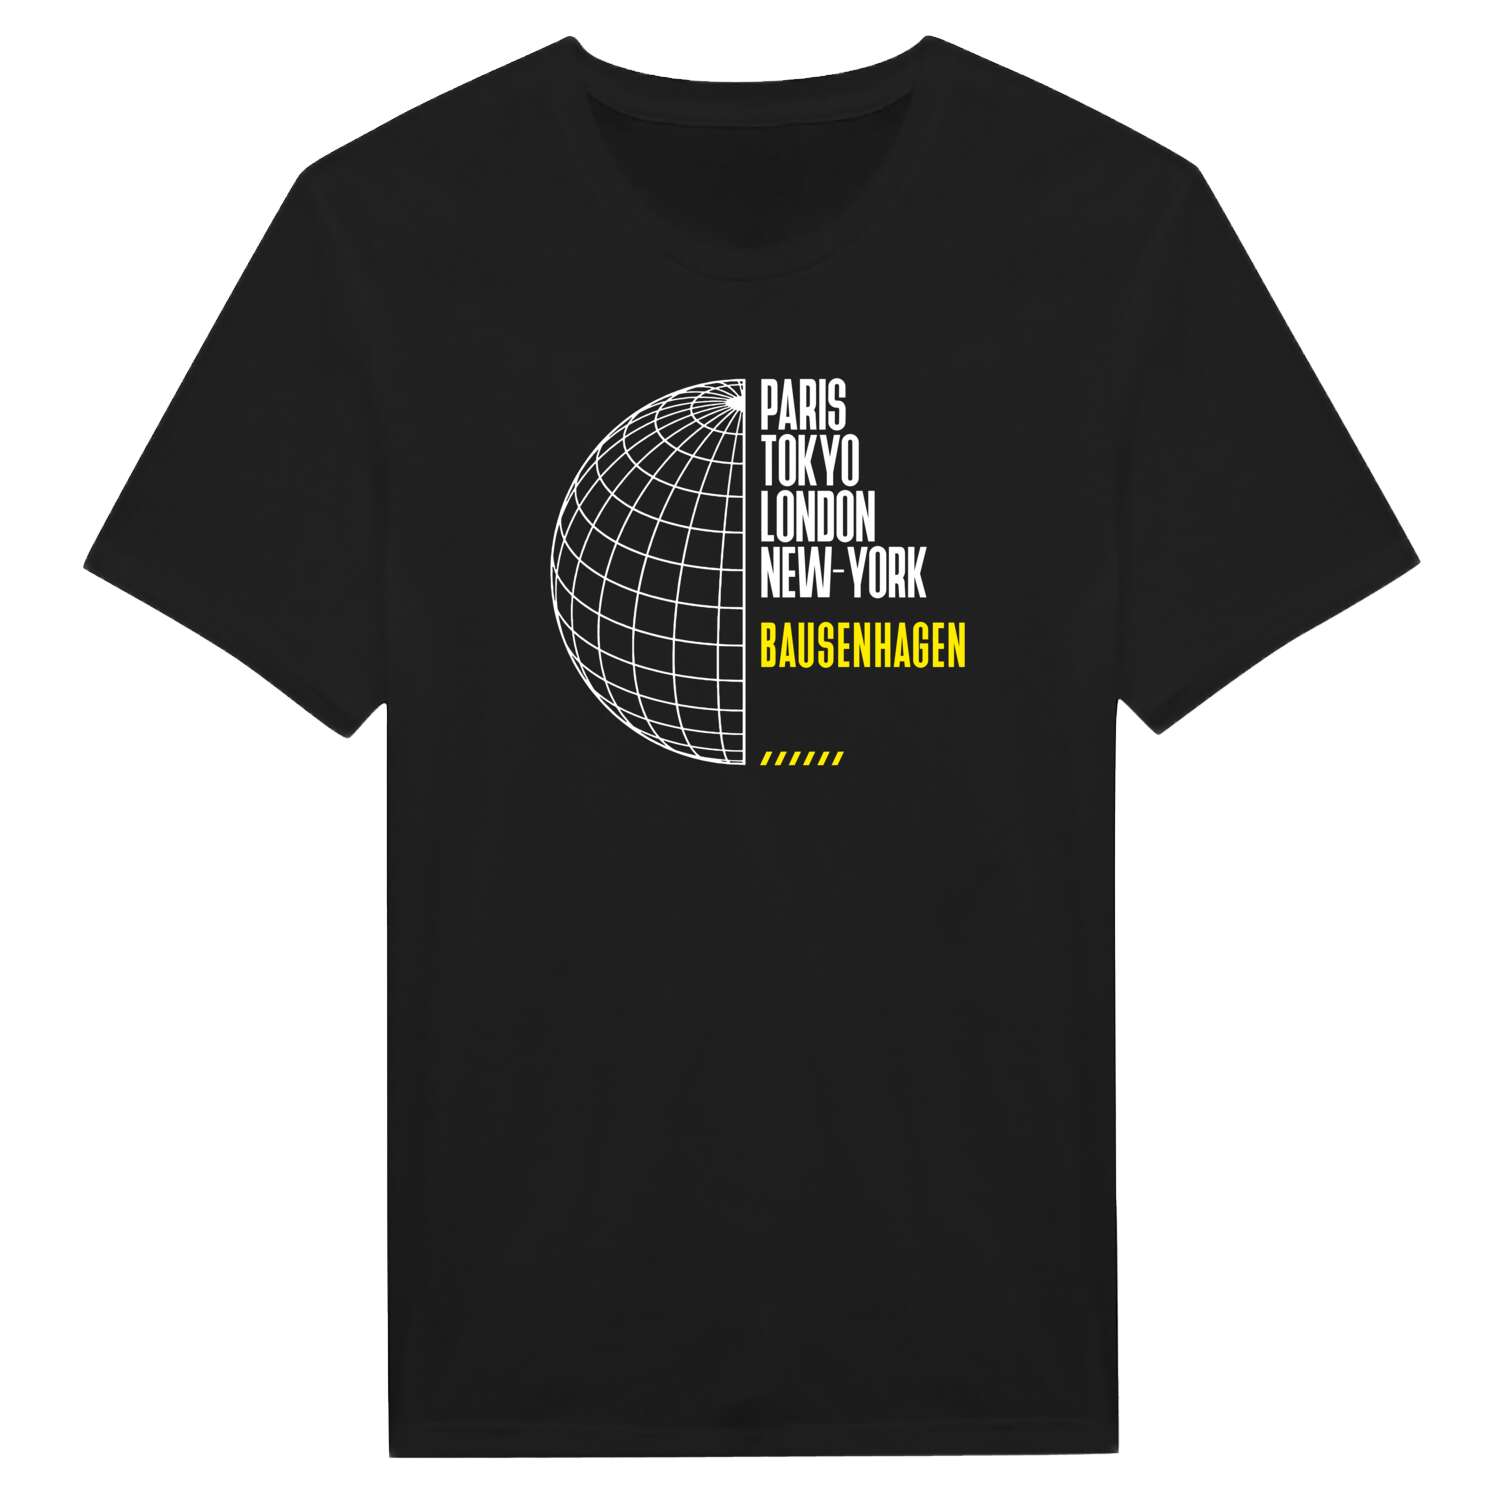 Bausenhagen T-Shirt »Paris Tokyo London«